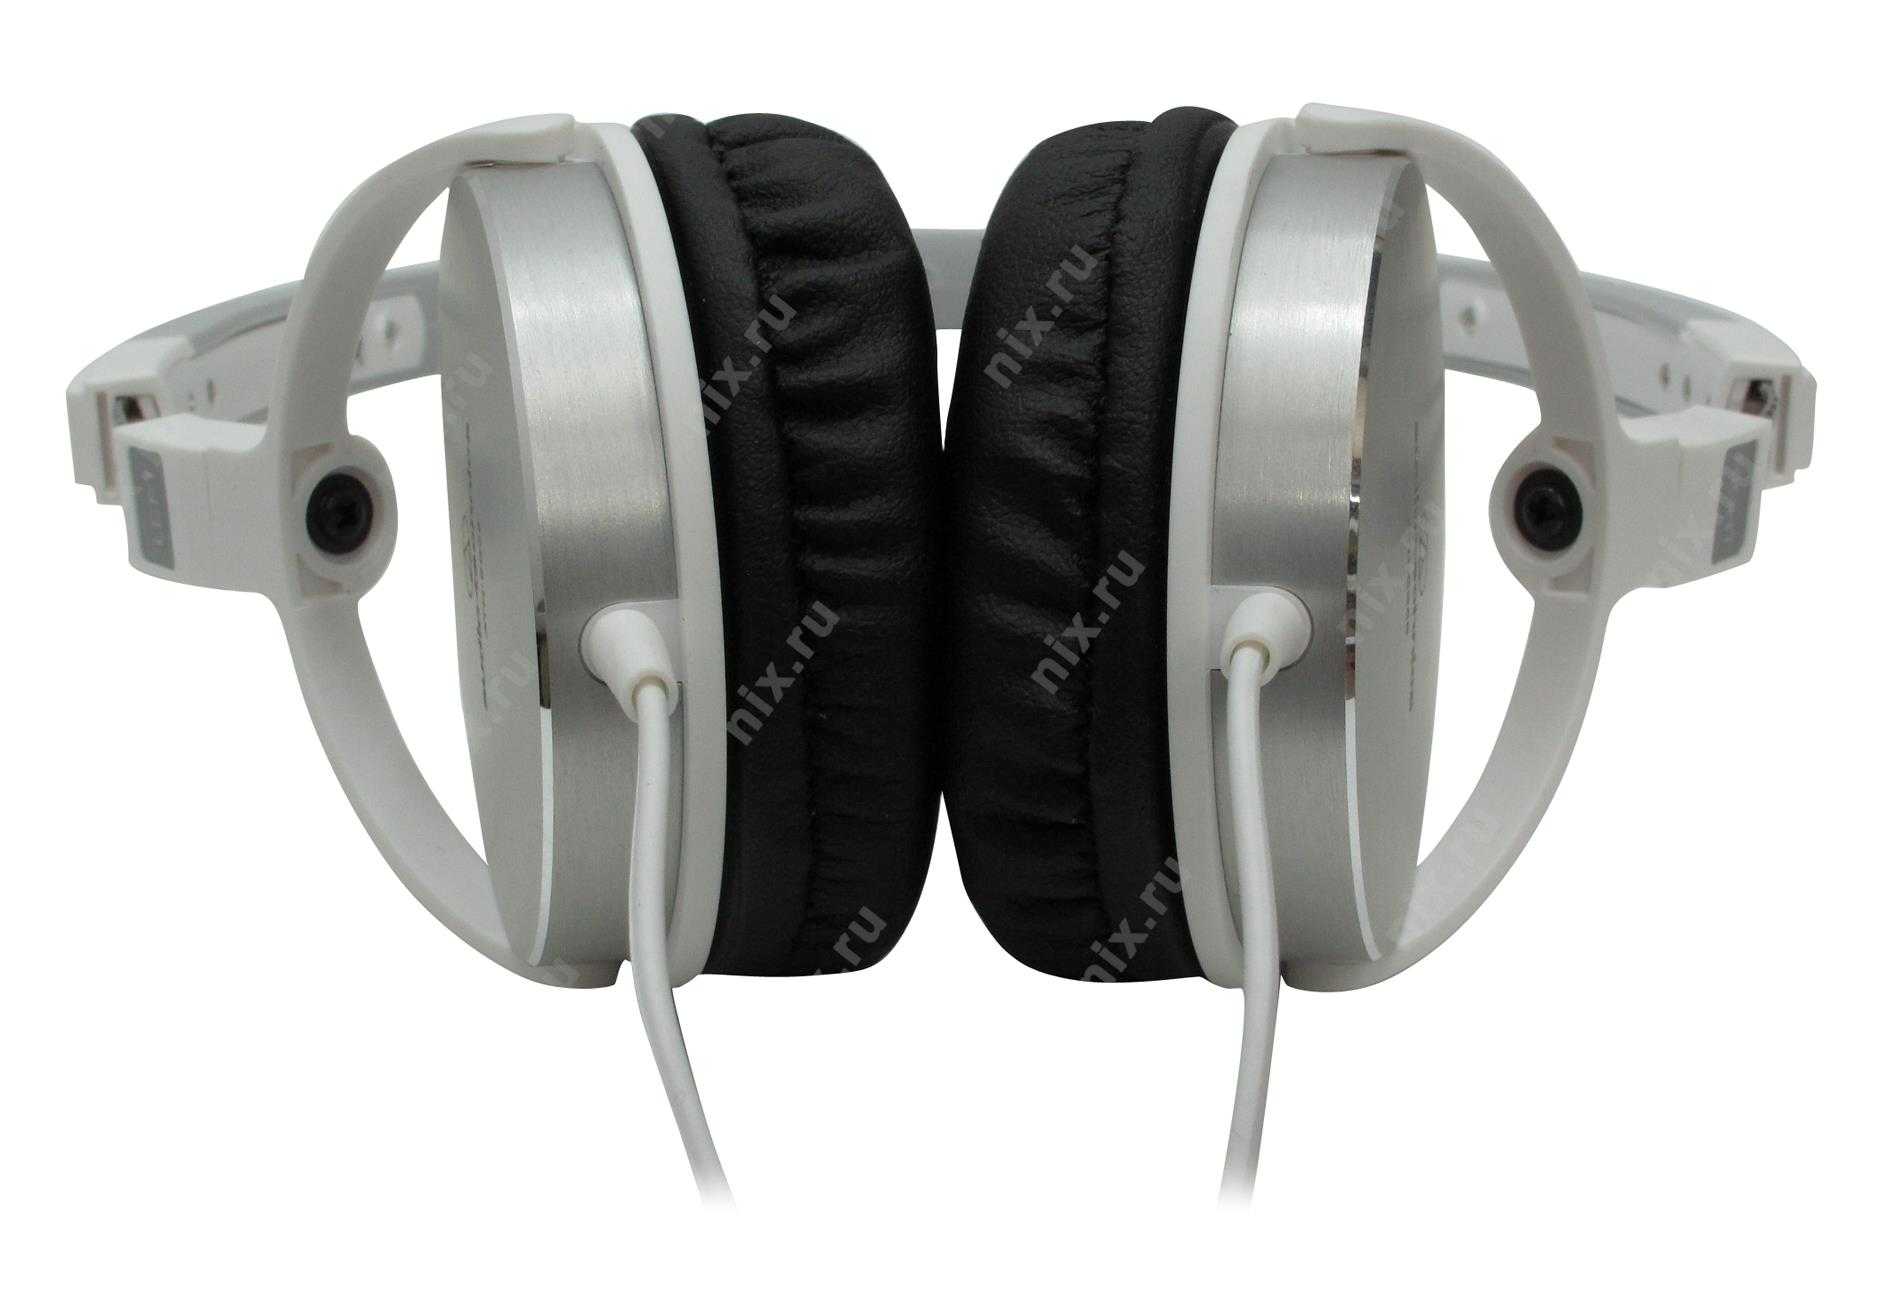 Наушники audio-technica ath-es55 — купить, цена и характеристики, отзывы